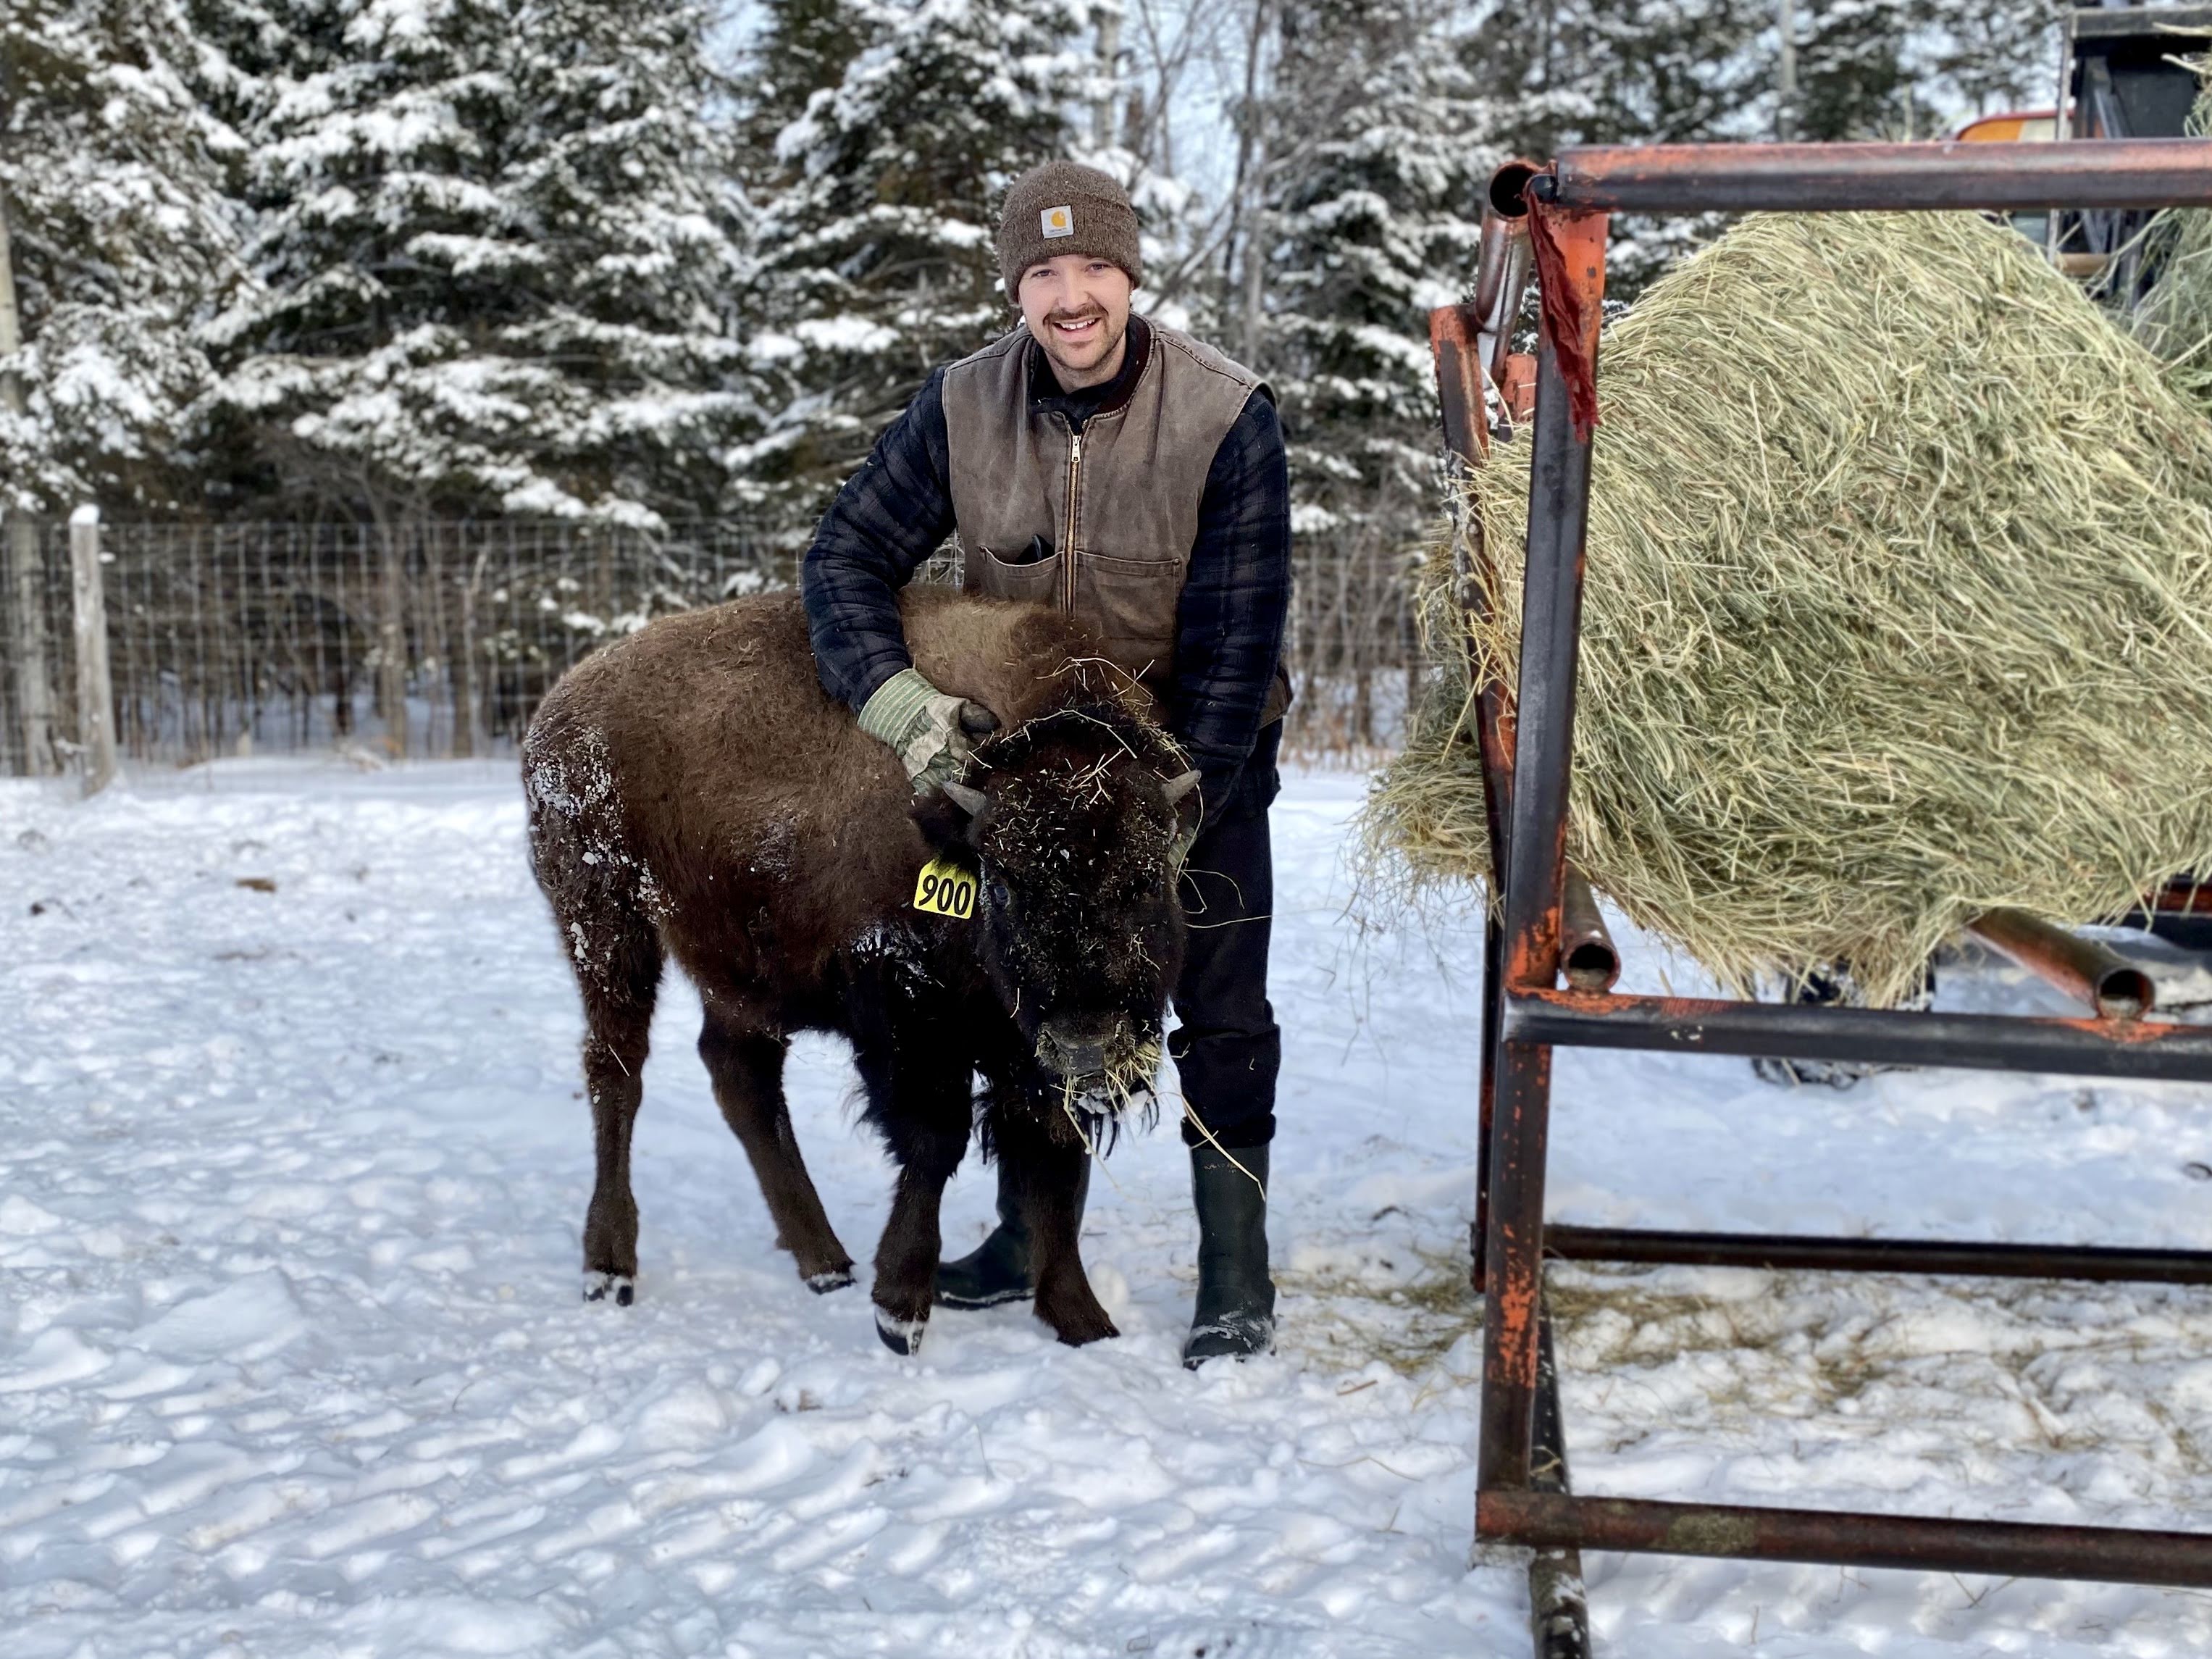 Charles gratte un petit bison derrière les oreilles, l'hiver, devant du foin.